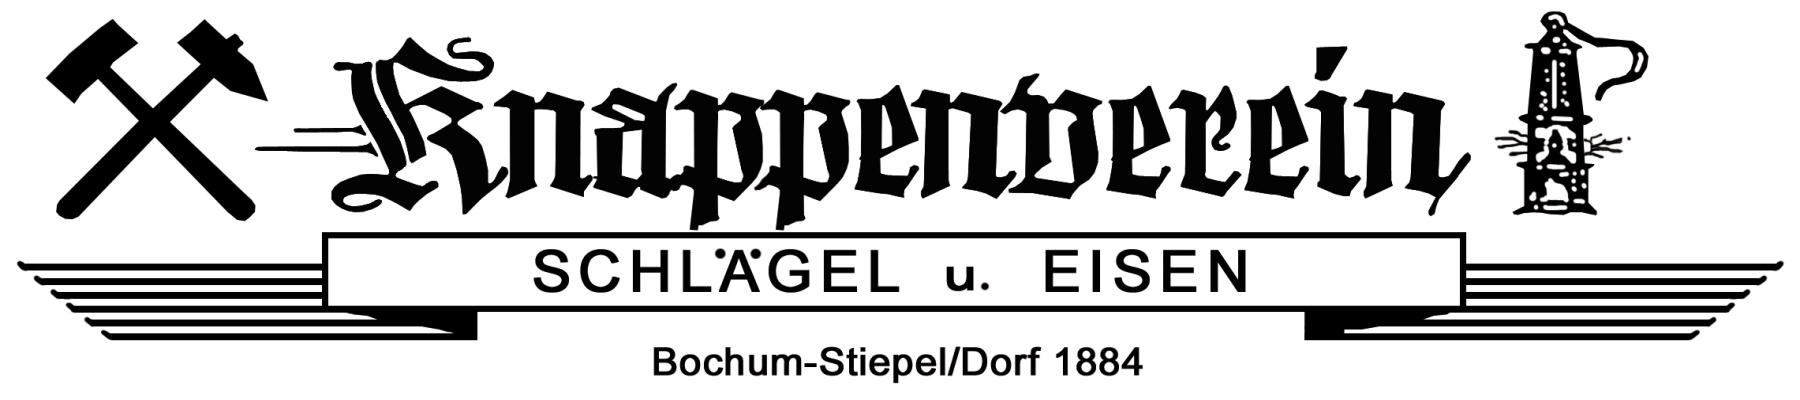 Knappenverein Schlägel u. Eisen